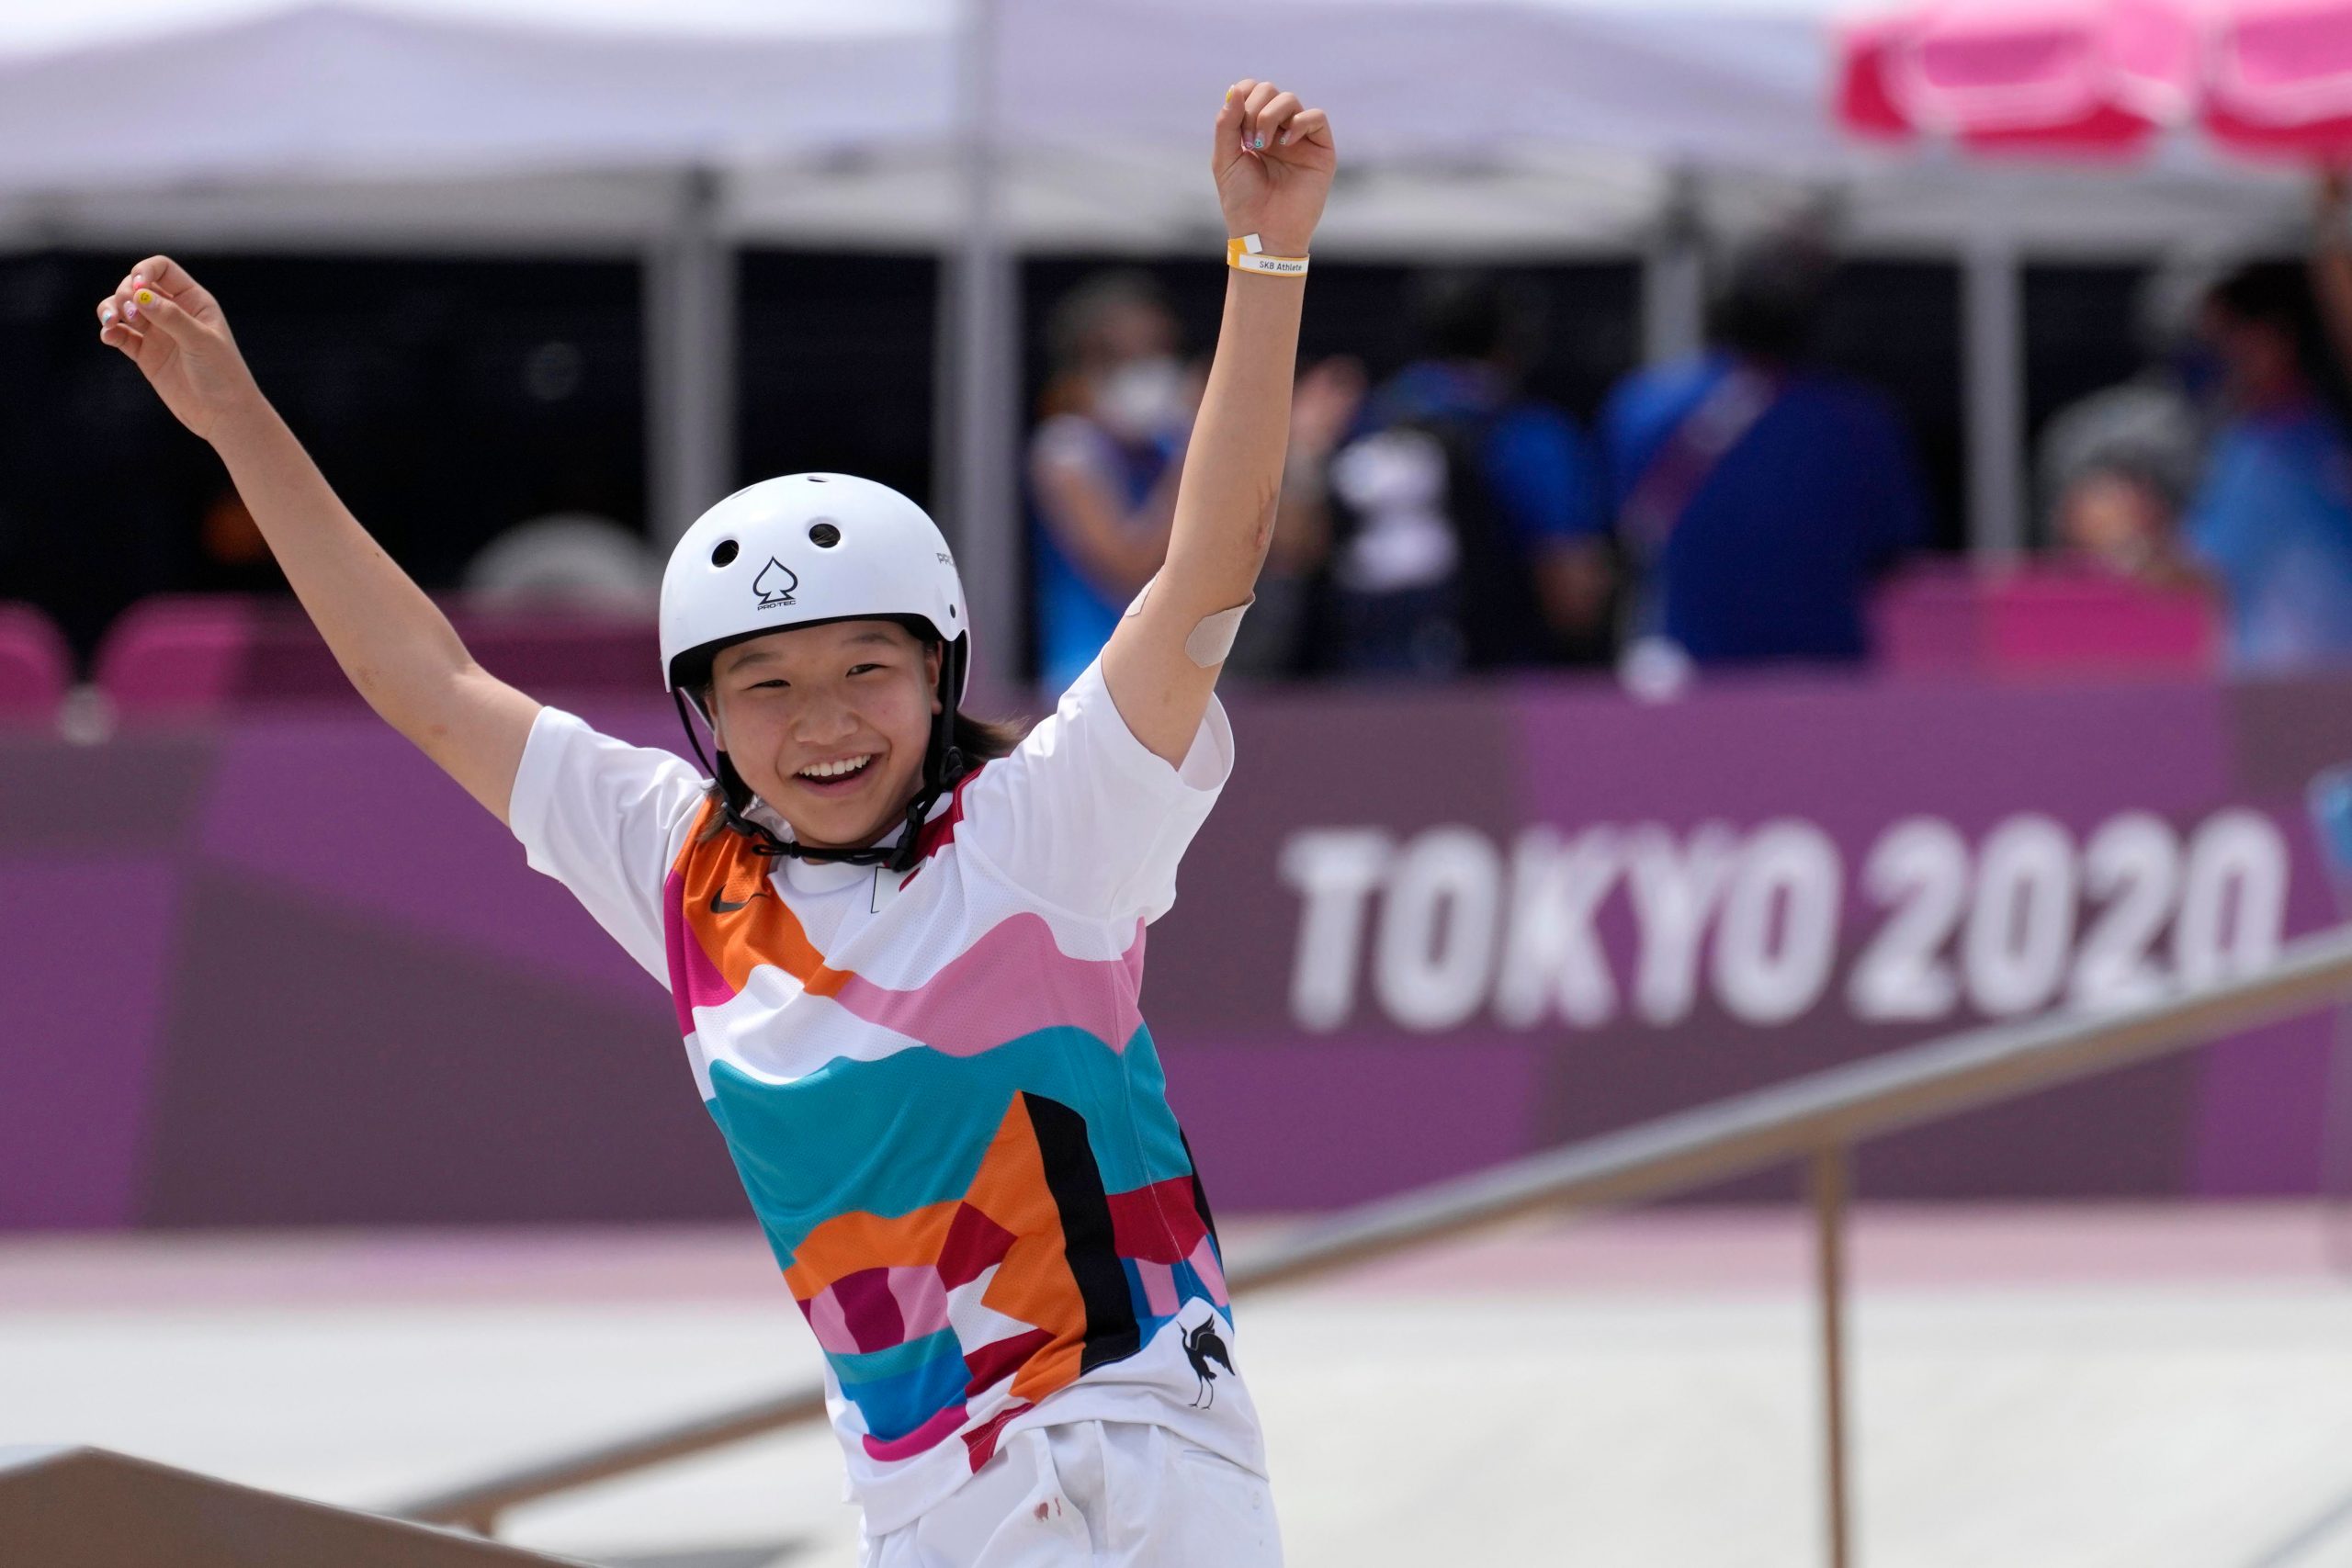 Tokyo Olympics: 13-year-old Japanese skateboarder Momiji Nishiya wins gold